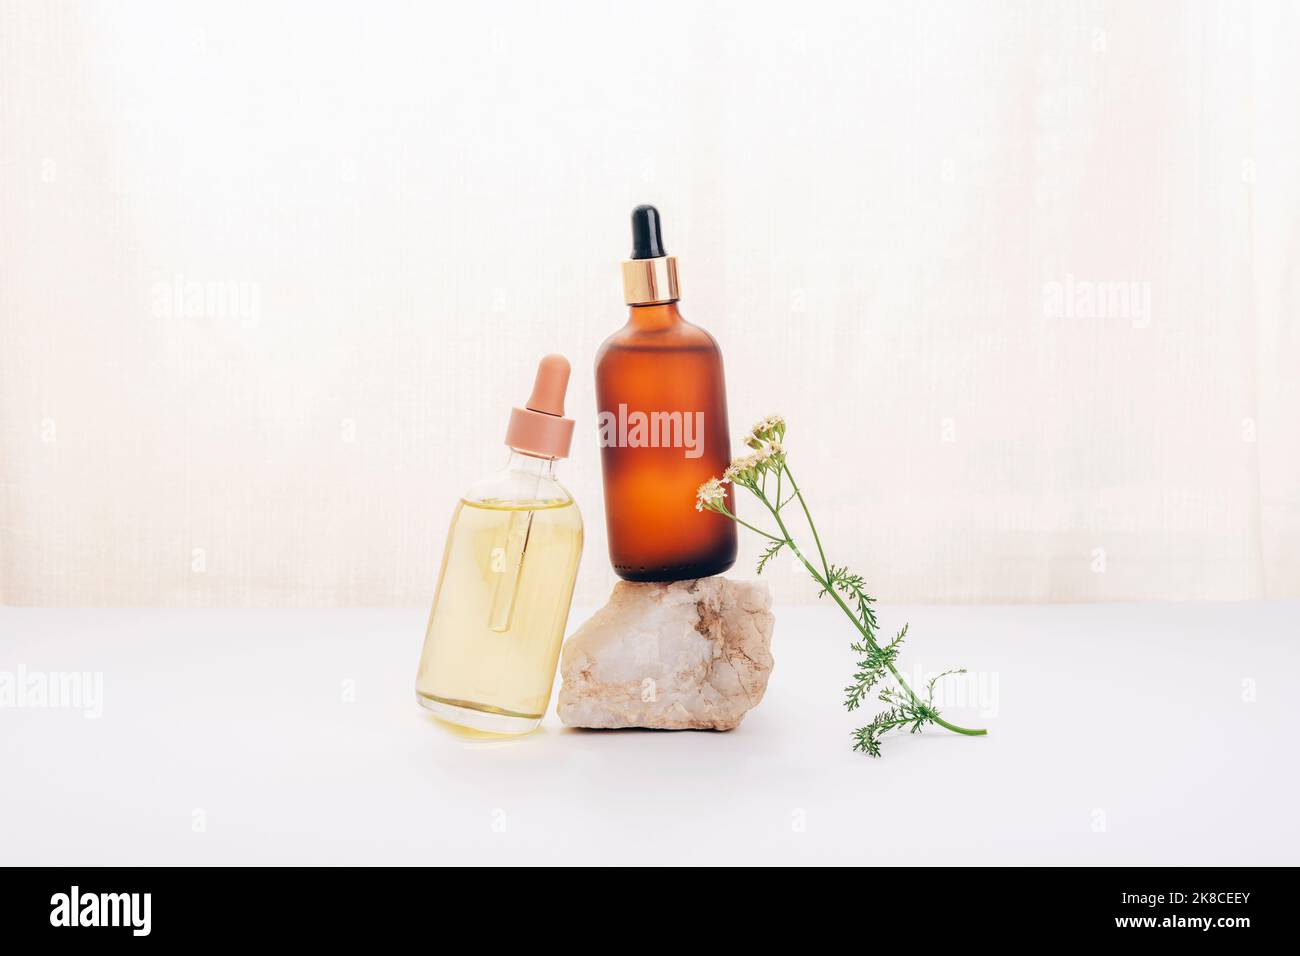 Zwei kosmetische Öl- oder Serumflaschen auf einem Stein und einer Schafgarbe auf weißem Hintergrund. Naturkosmetik, Spa- und Wellnesskonzept Stockfoto